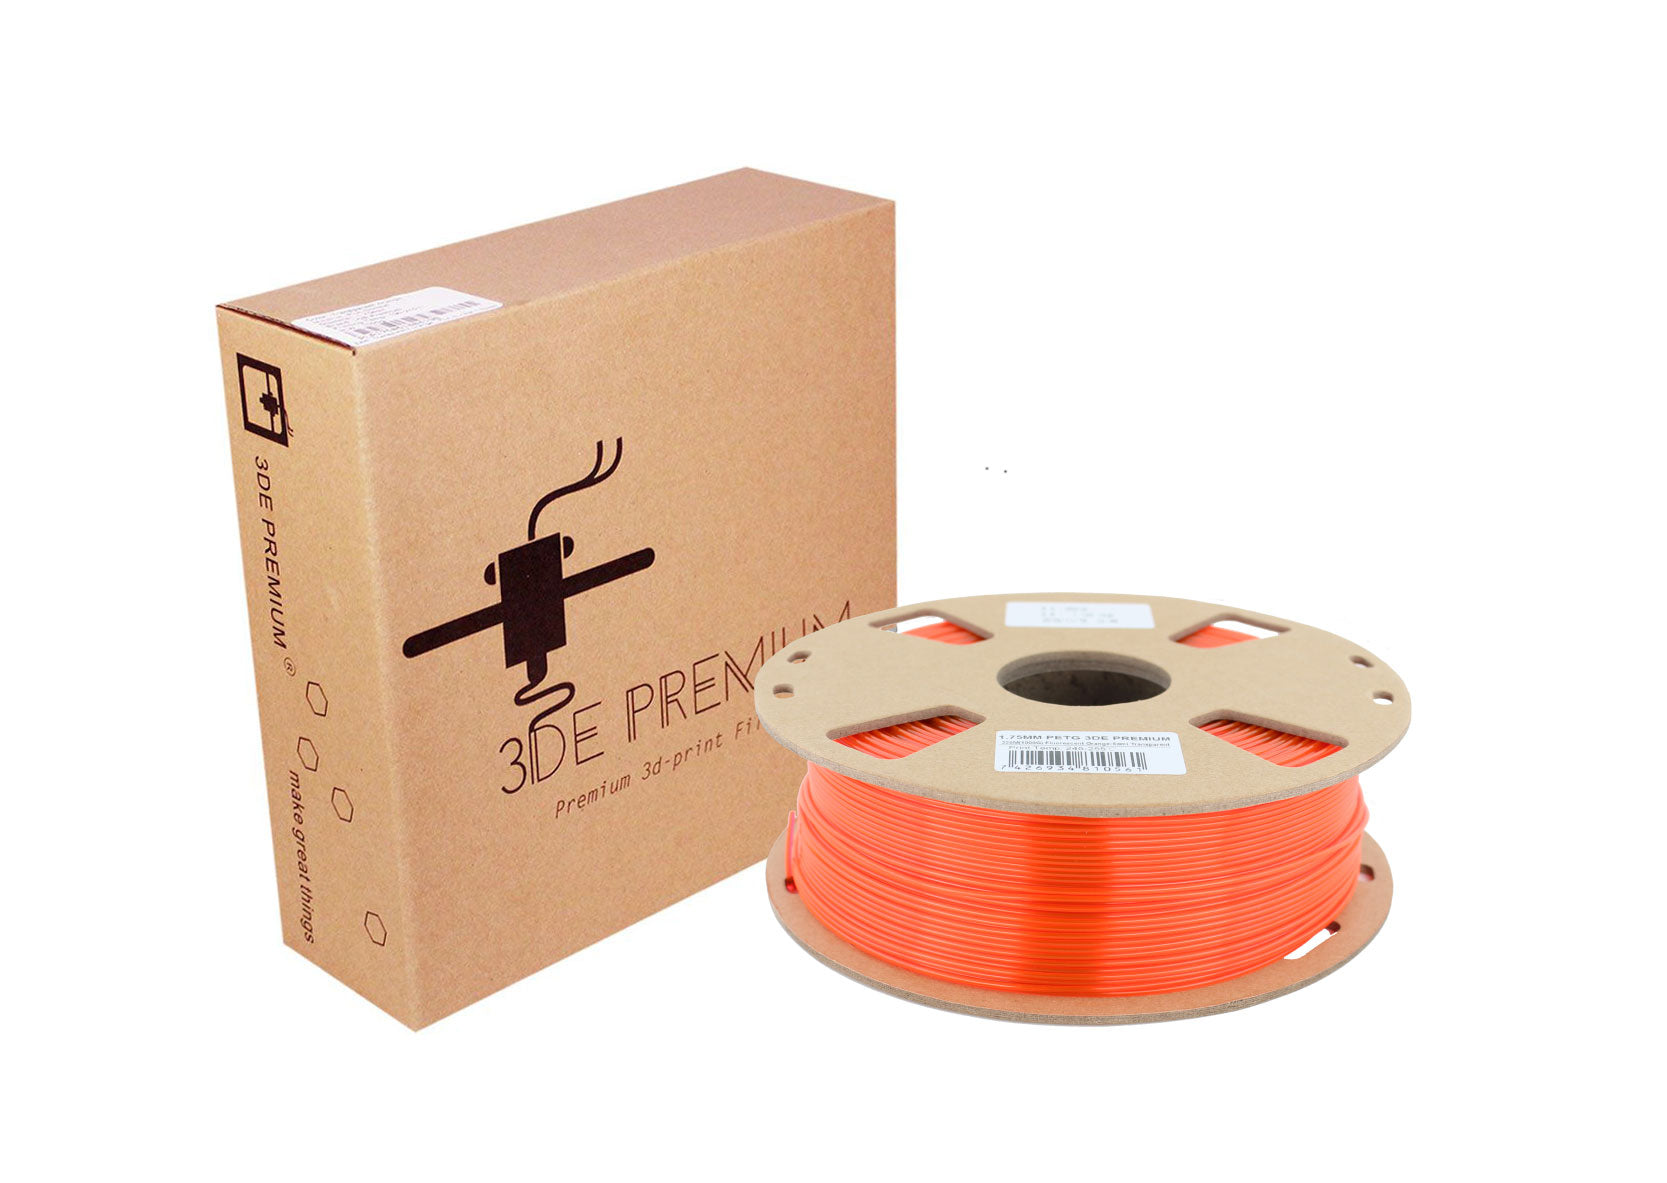 3DE Premium - PETG - Fluorescent Orange - 1.75mm - 1kg (Semi-transparent)